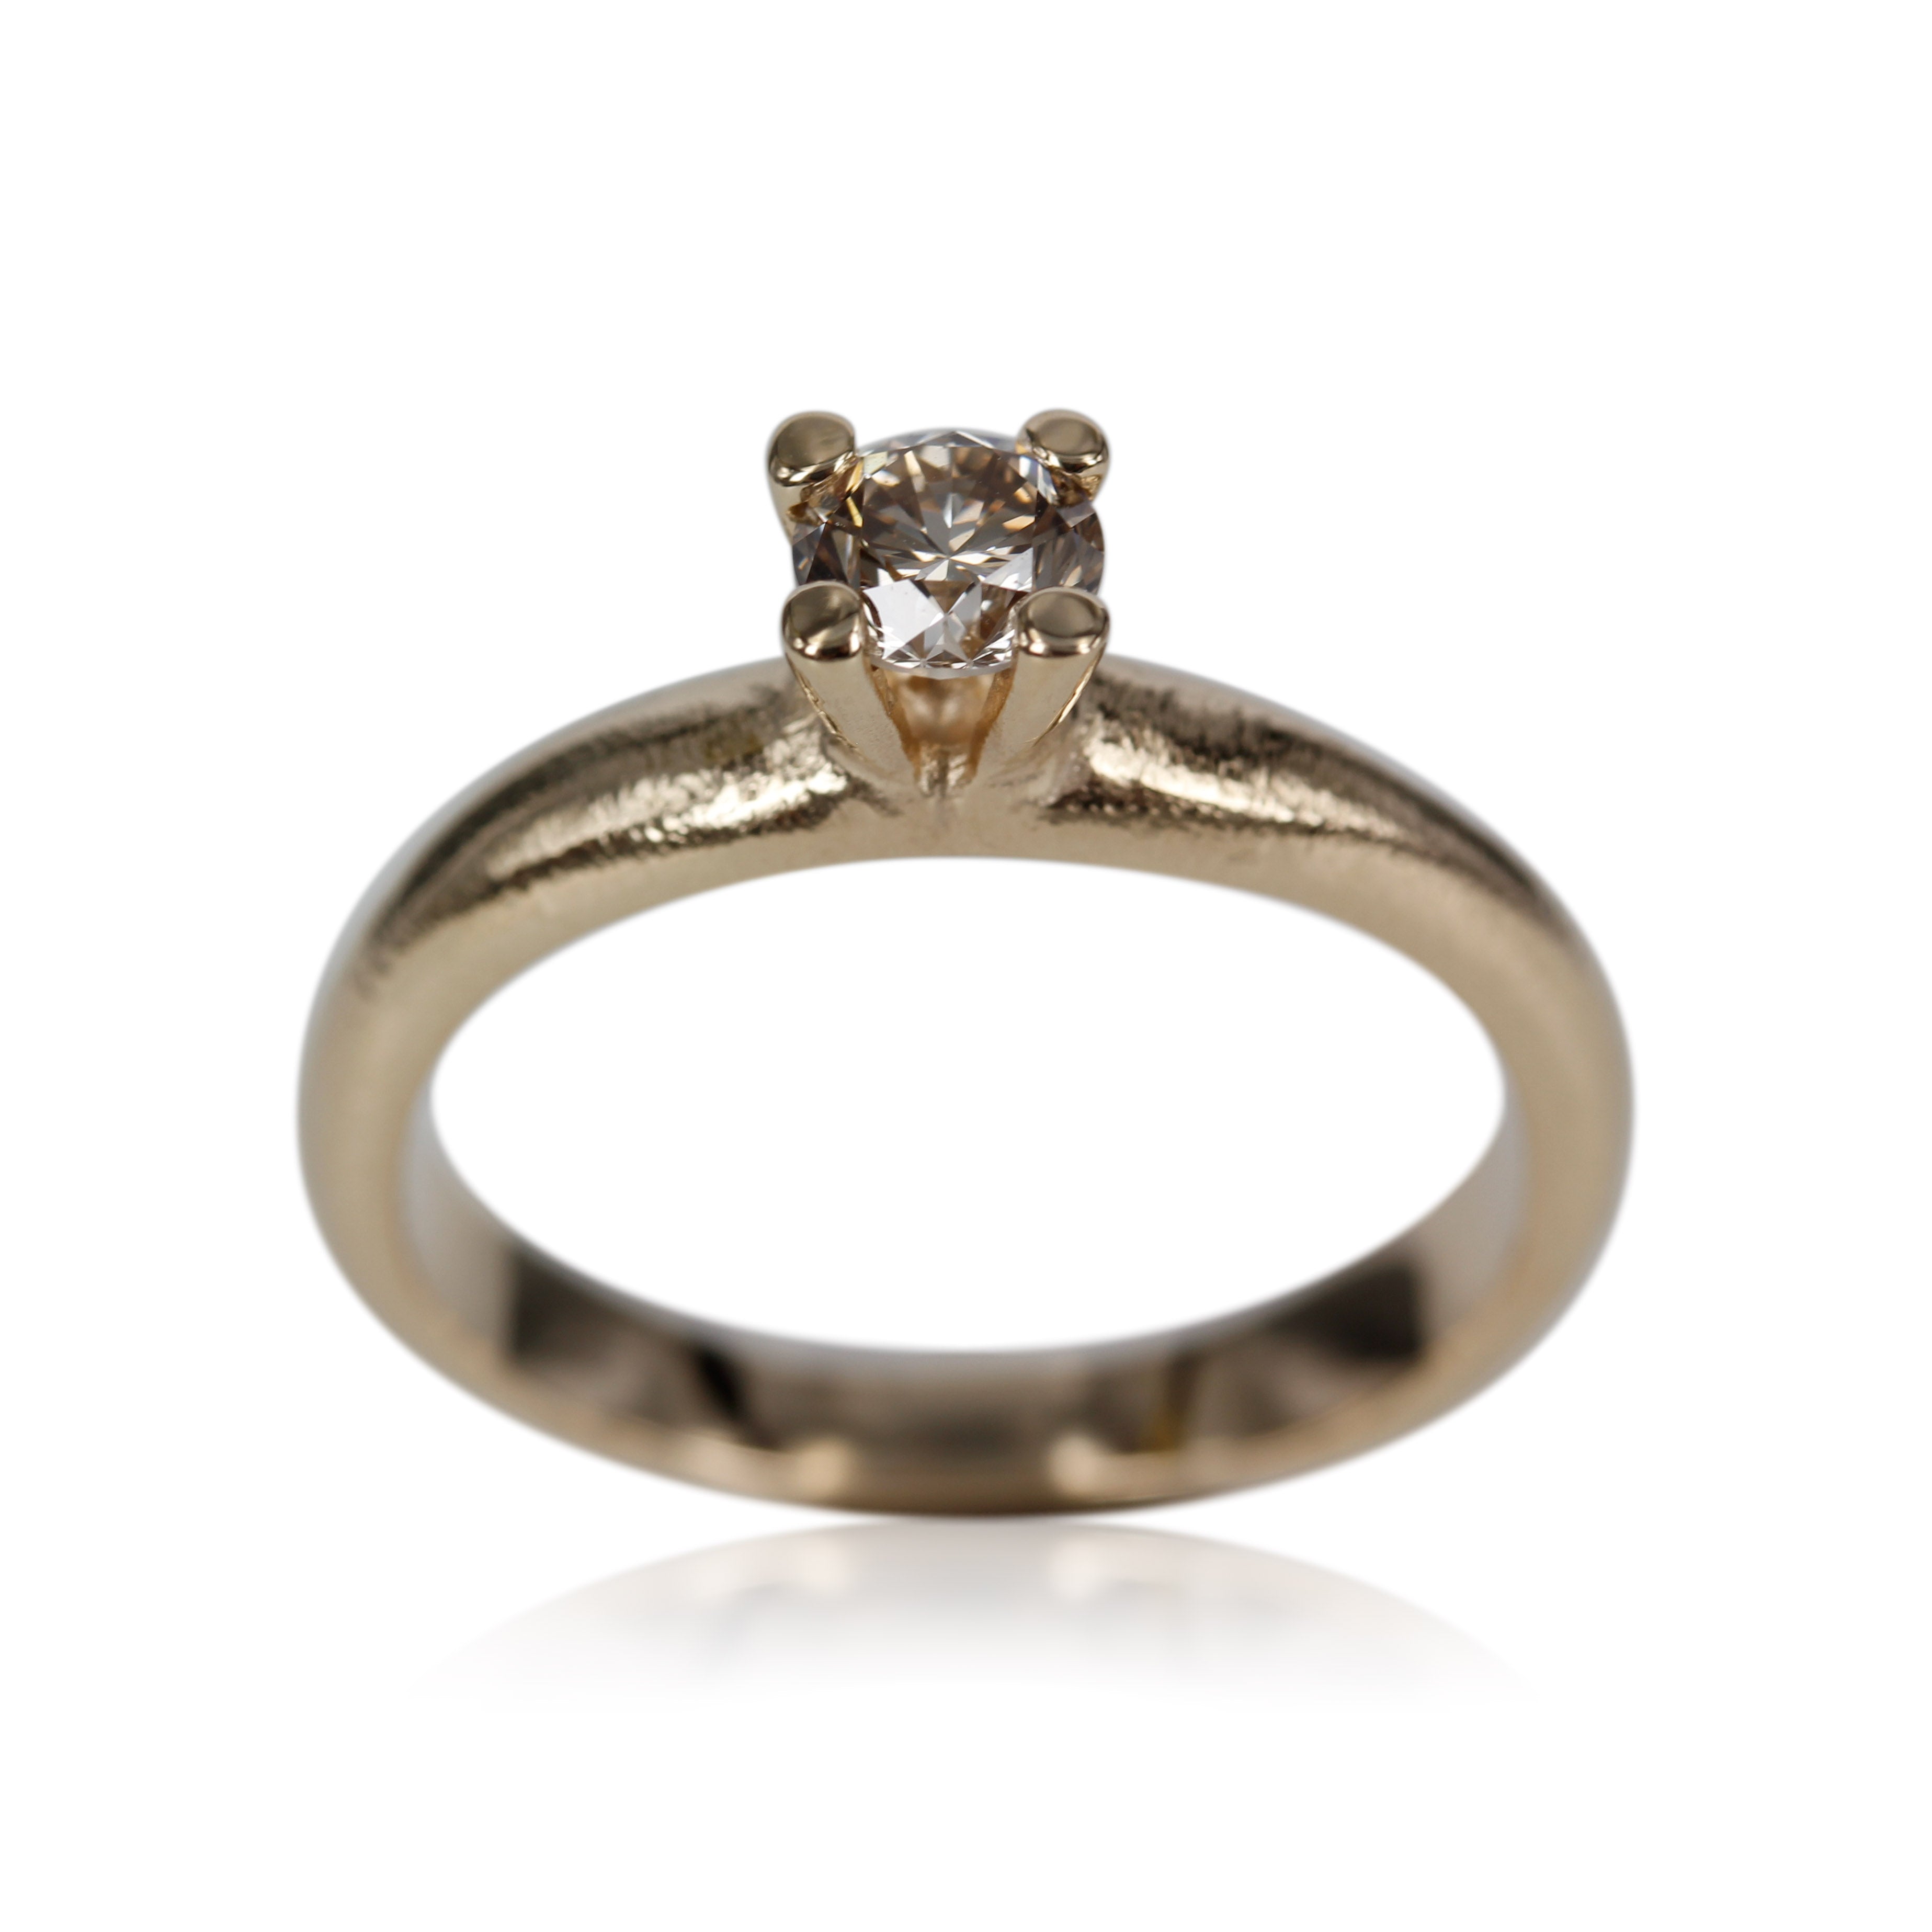 3, Organisk ring med rustik look, ringen er designet med tanke for den klassiske prinsessering med et tvist, isat 0.50 ct. champagne farver diamant. 